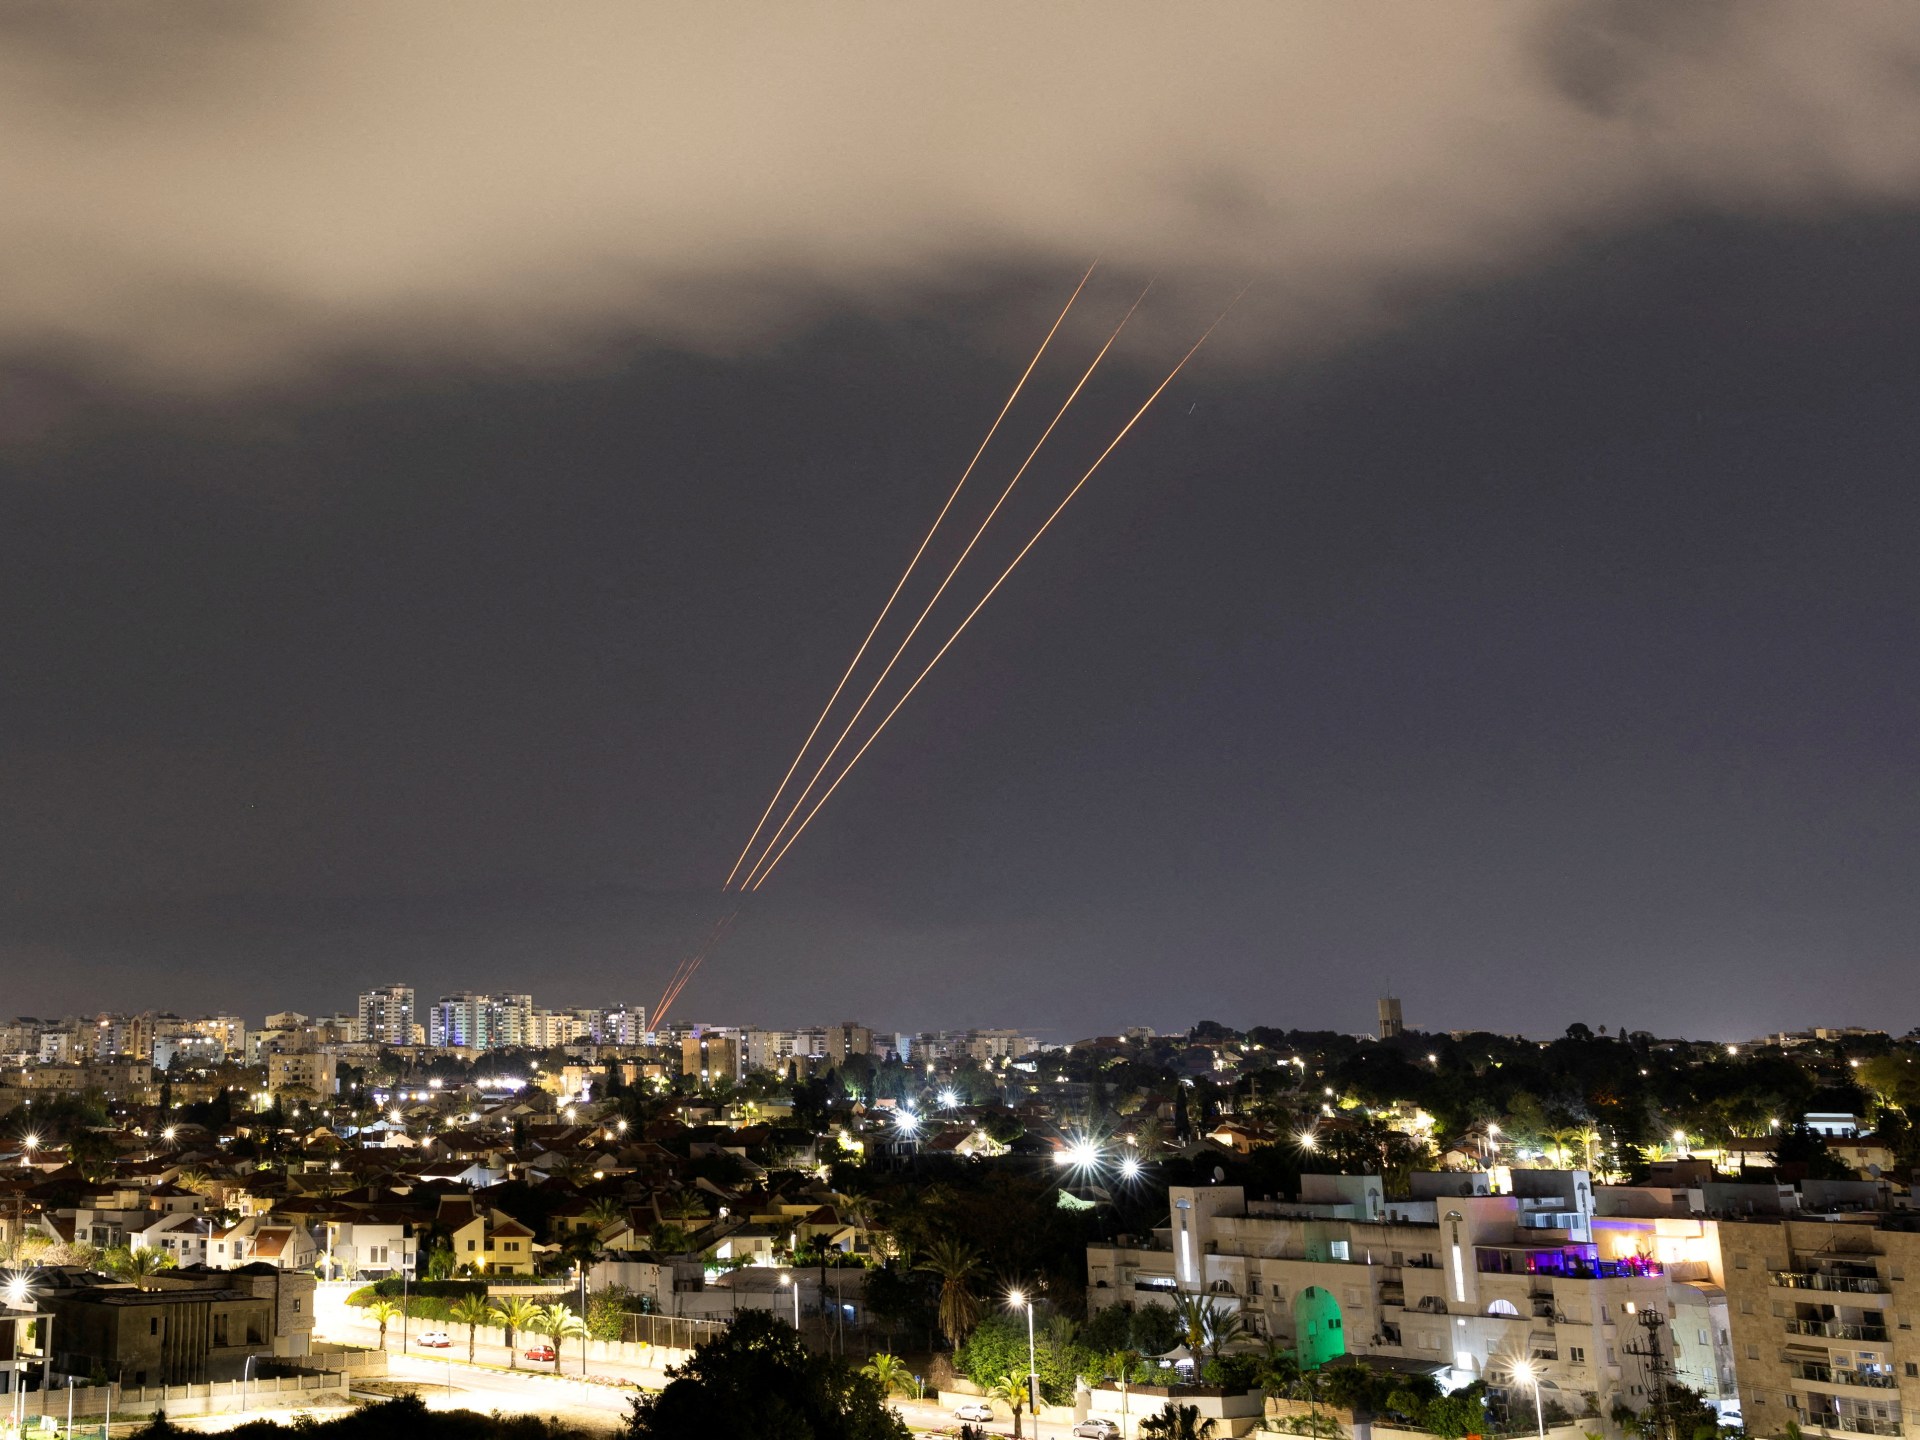 الهجوم المنسوب لإسرائيل في إيران هل ينهي المواجهة المباشرة؟ | أخبار – البوكس نيوز